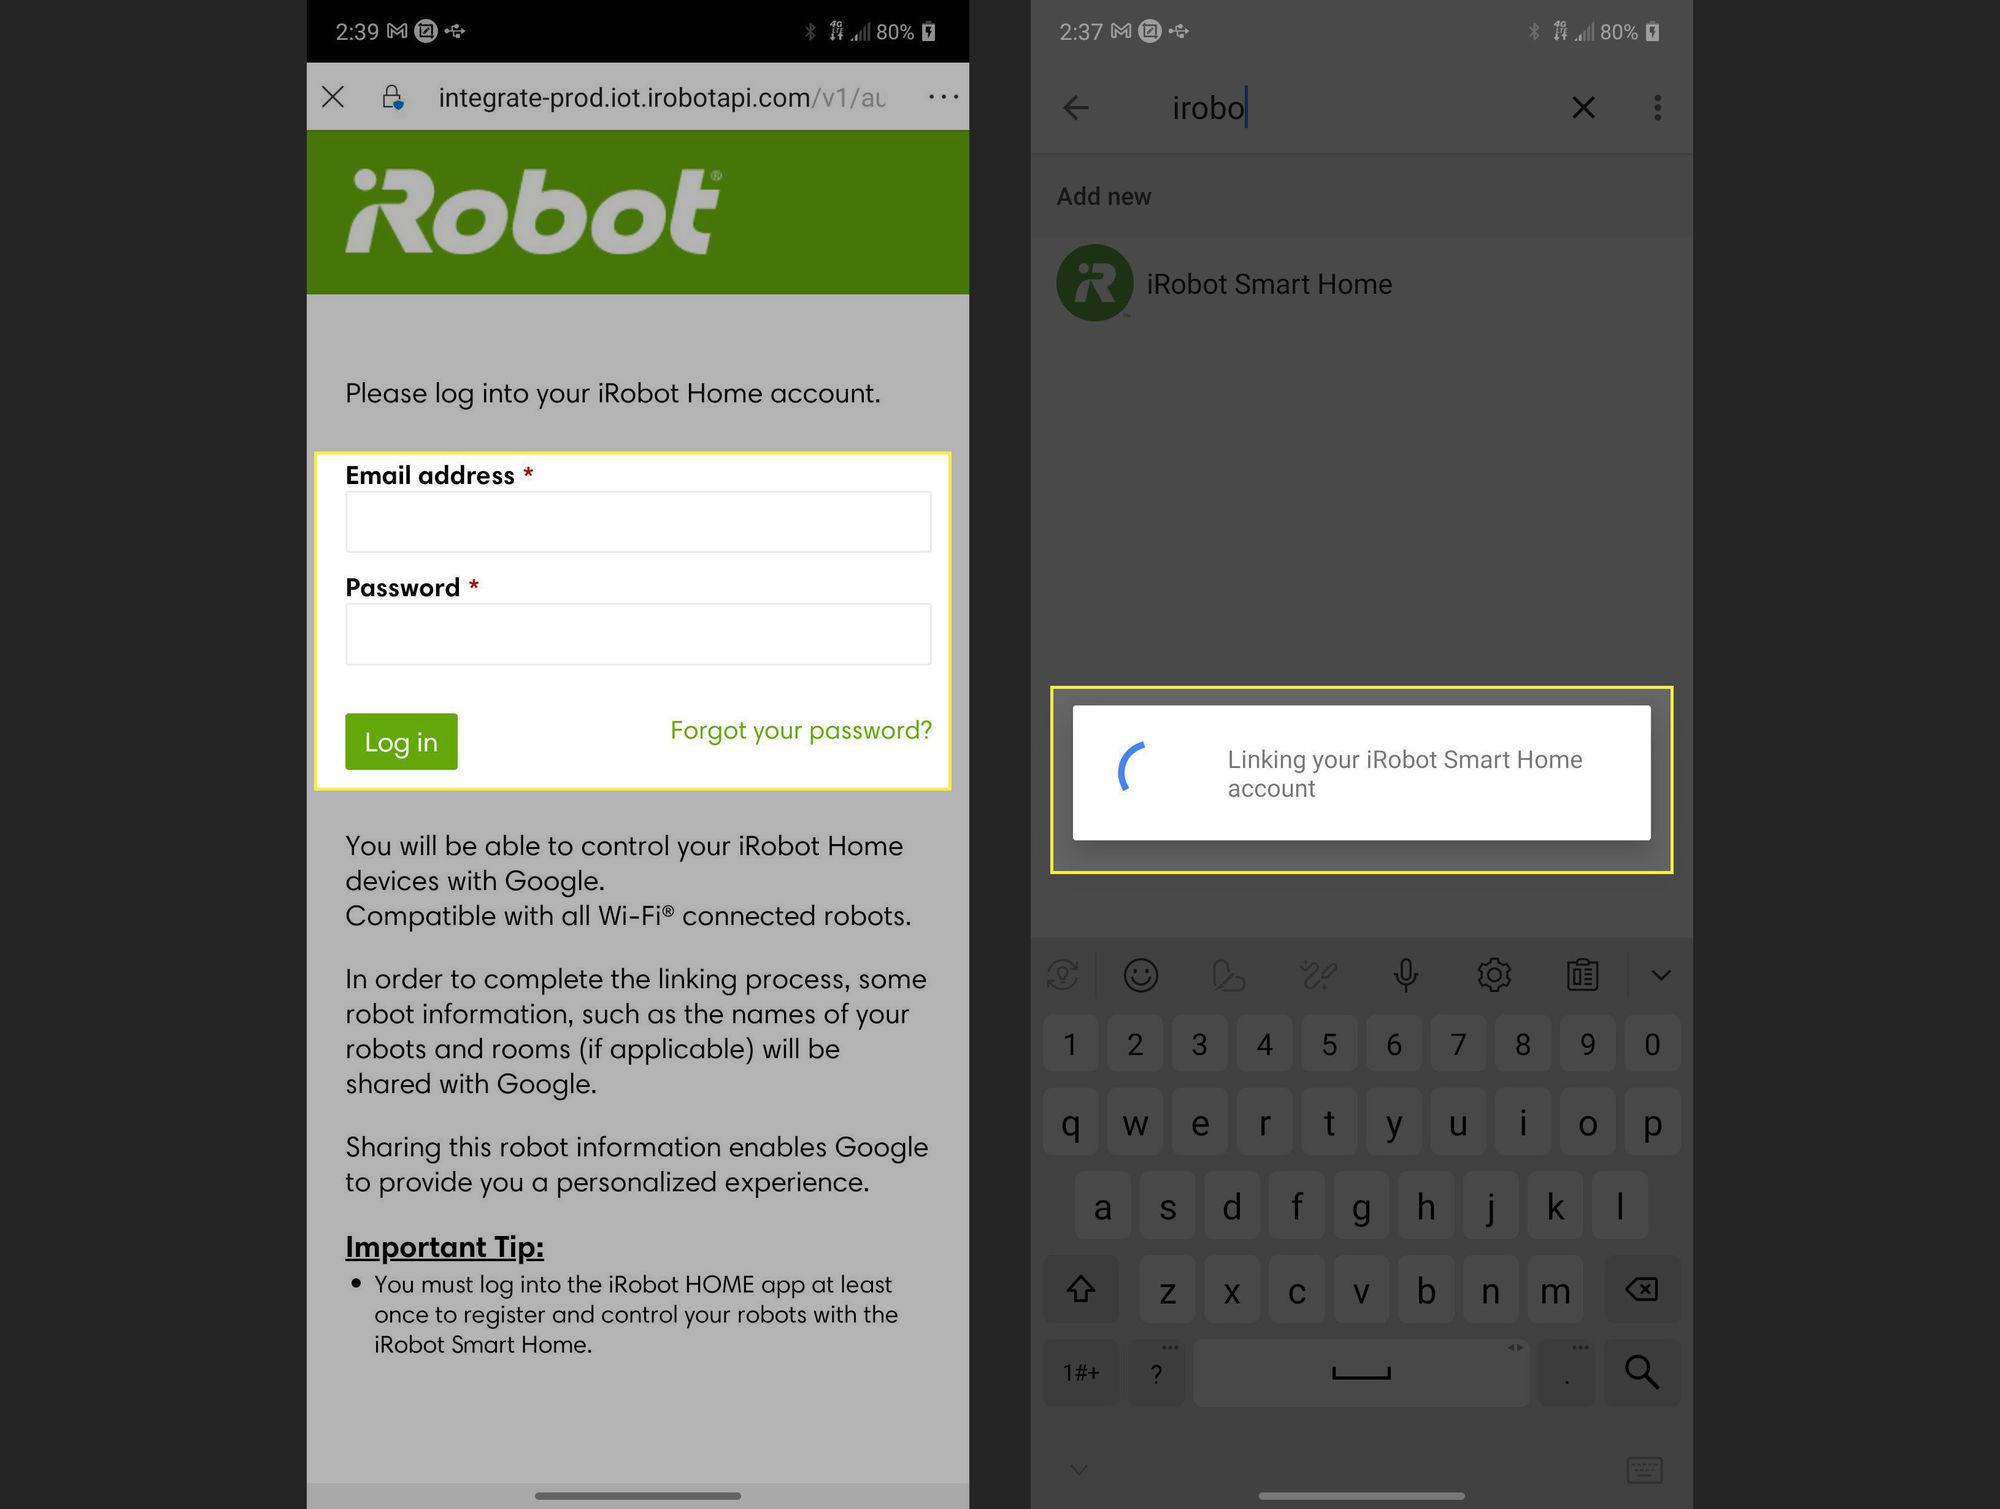 iRobot-tilisivu, jossa käyttäjätiedot ja kirjautumisviesti on korostettuna